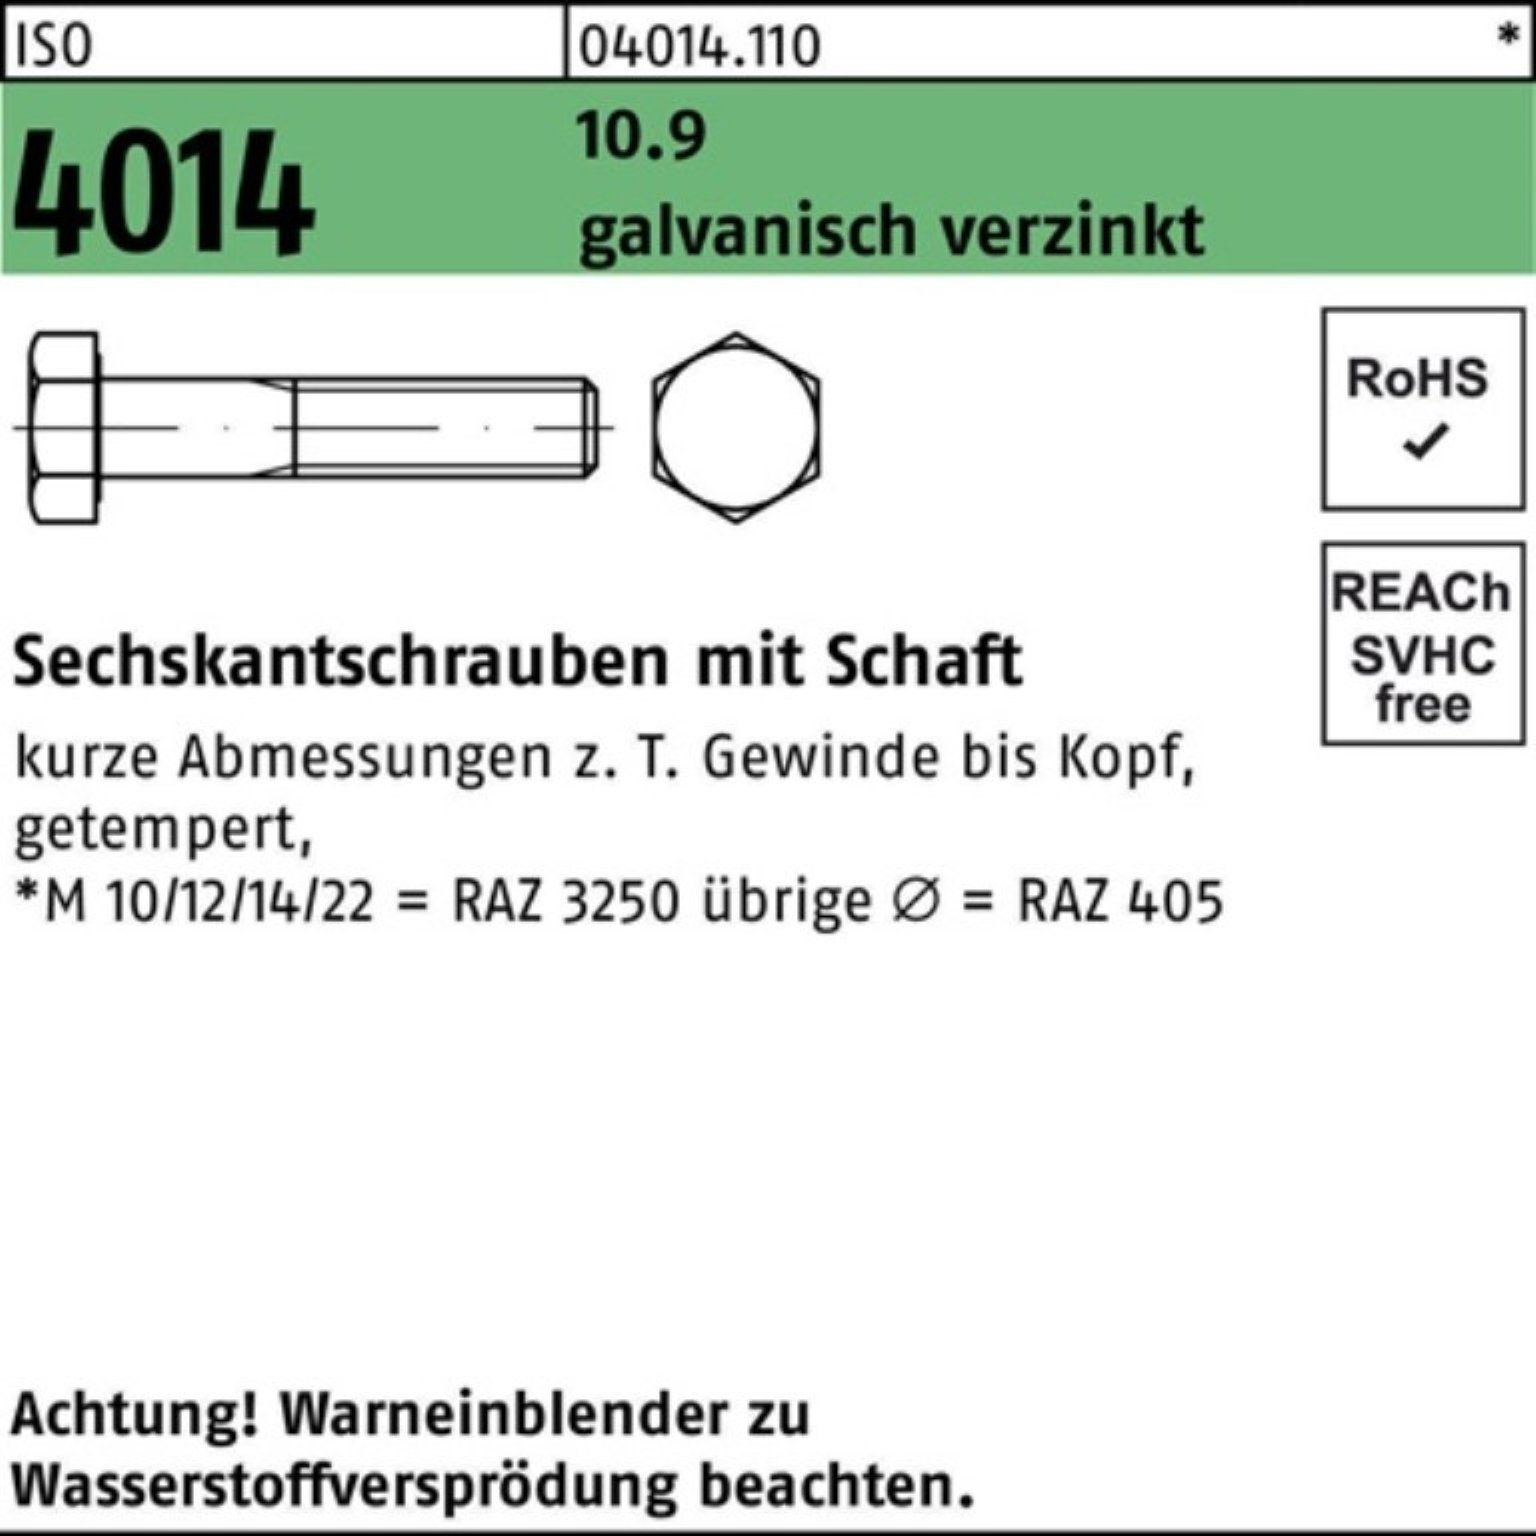 Pack 2 90 Sechskantschraube Schaft M20x Sechskantschraube 10.9 ISO galv.verz. Bufab 100er 4014